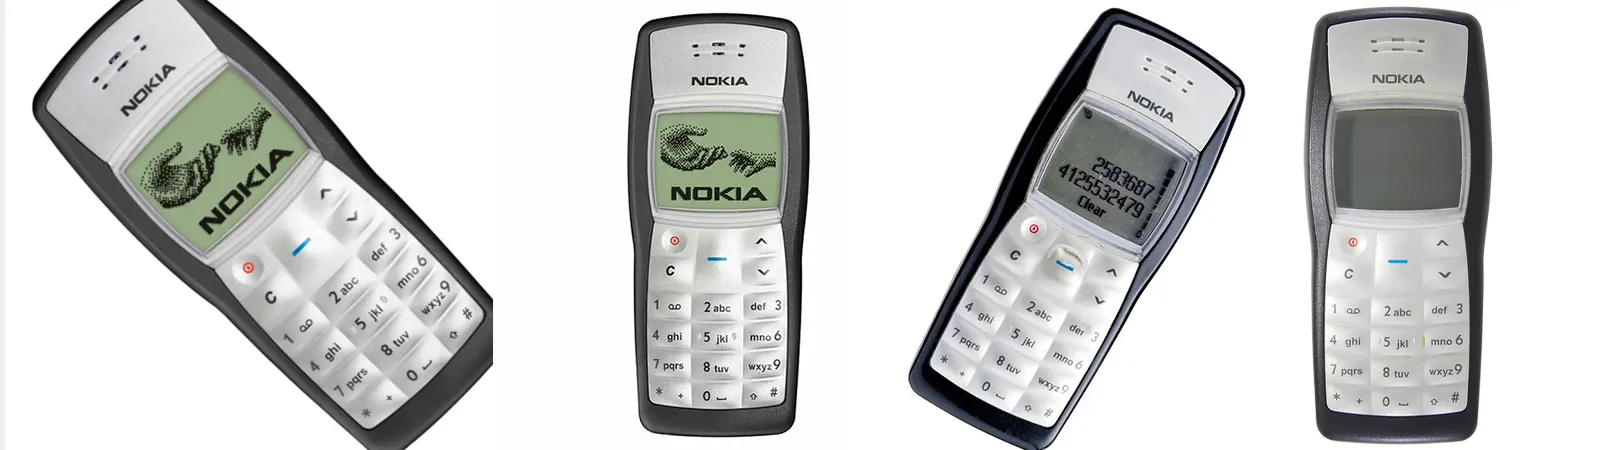 Nokia 1100 (2003)